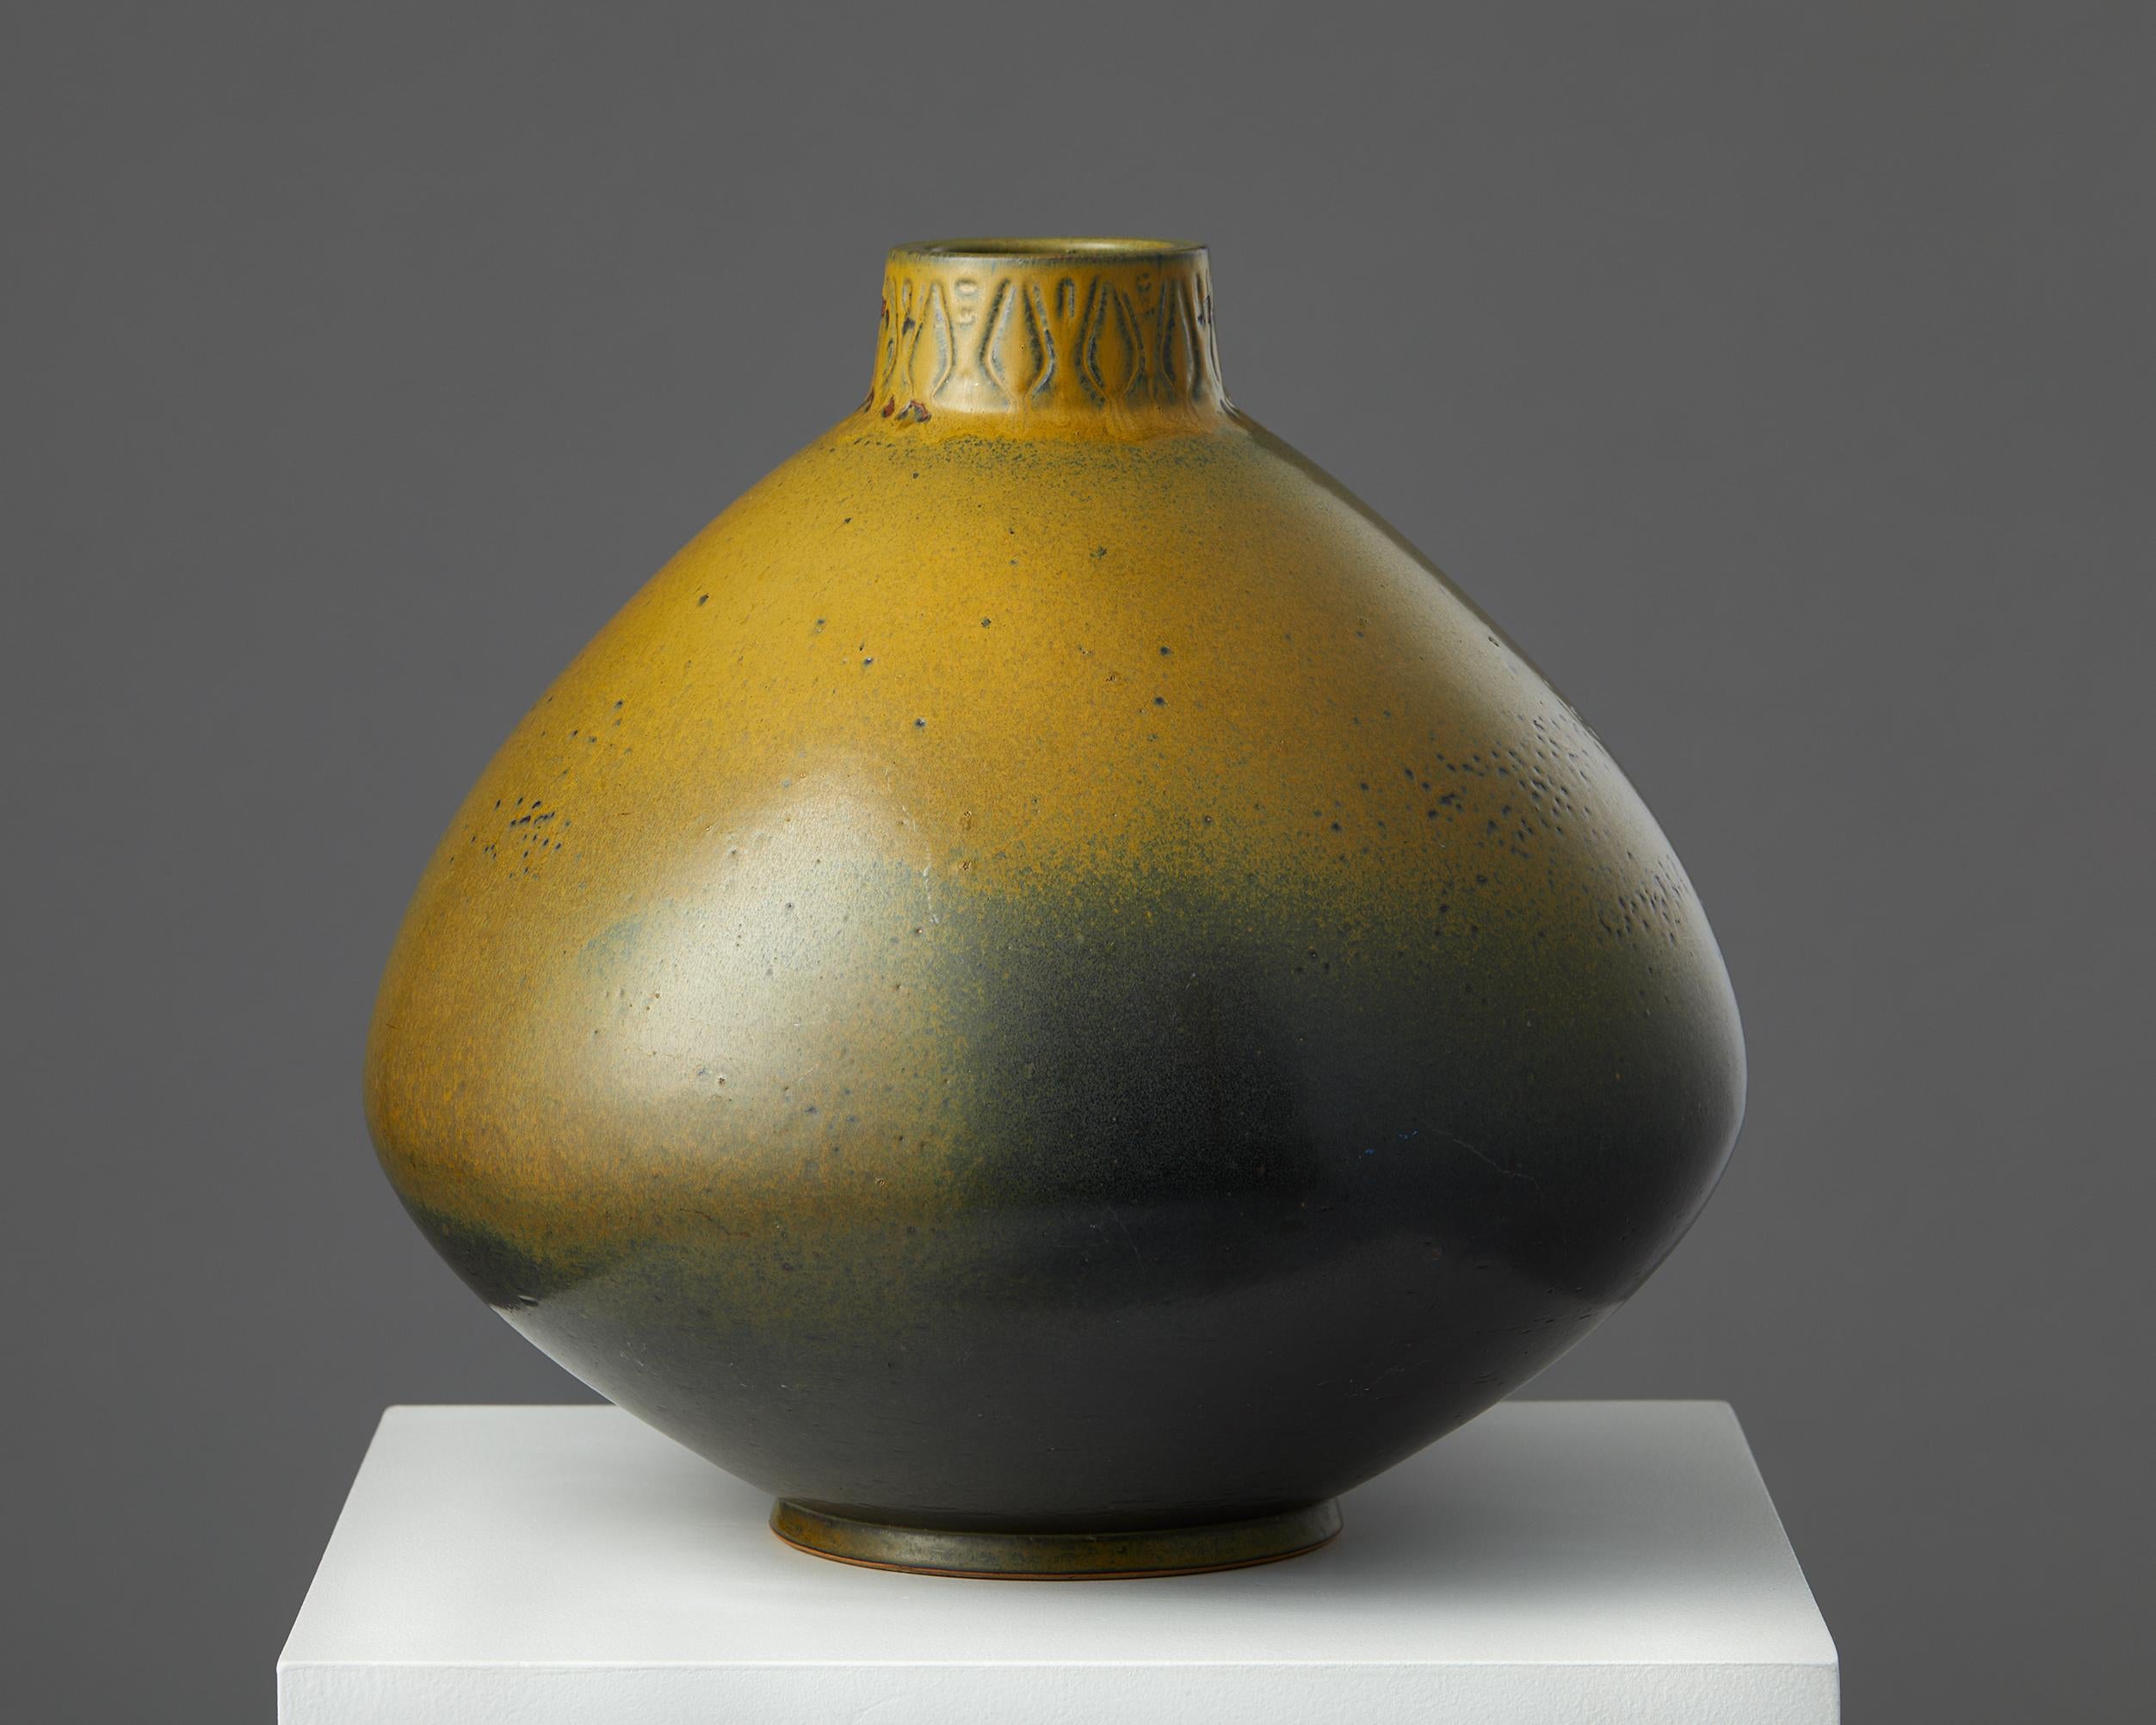 Vase entworfen von Yngve Blixt,
Schweden. 1955.

Steingut.

Unterschrieben.

Abmessungen:
Höhe: 33 cm / 13